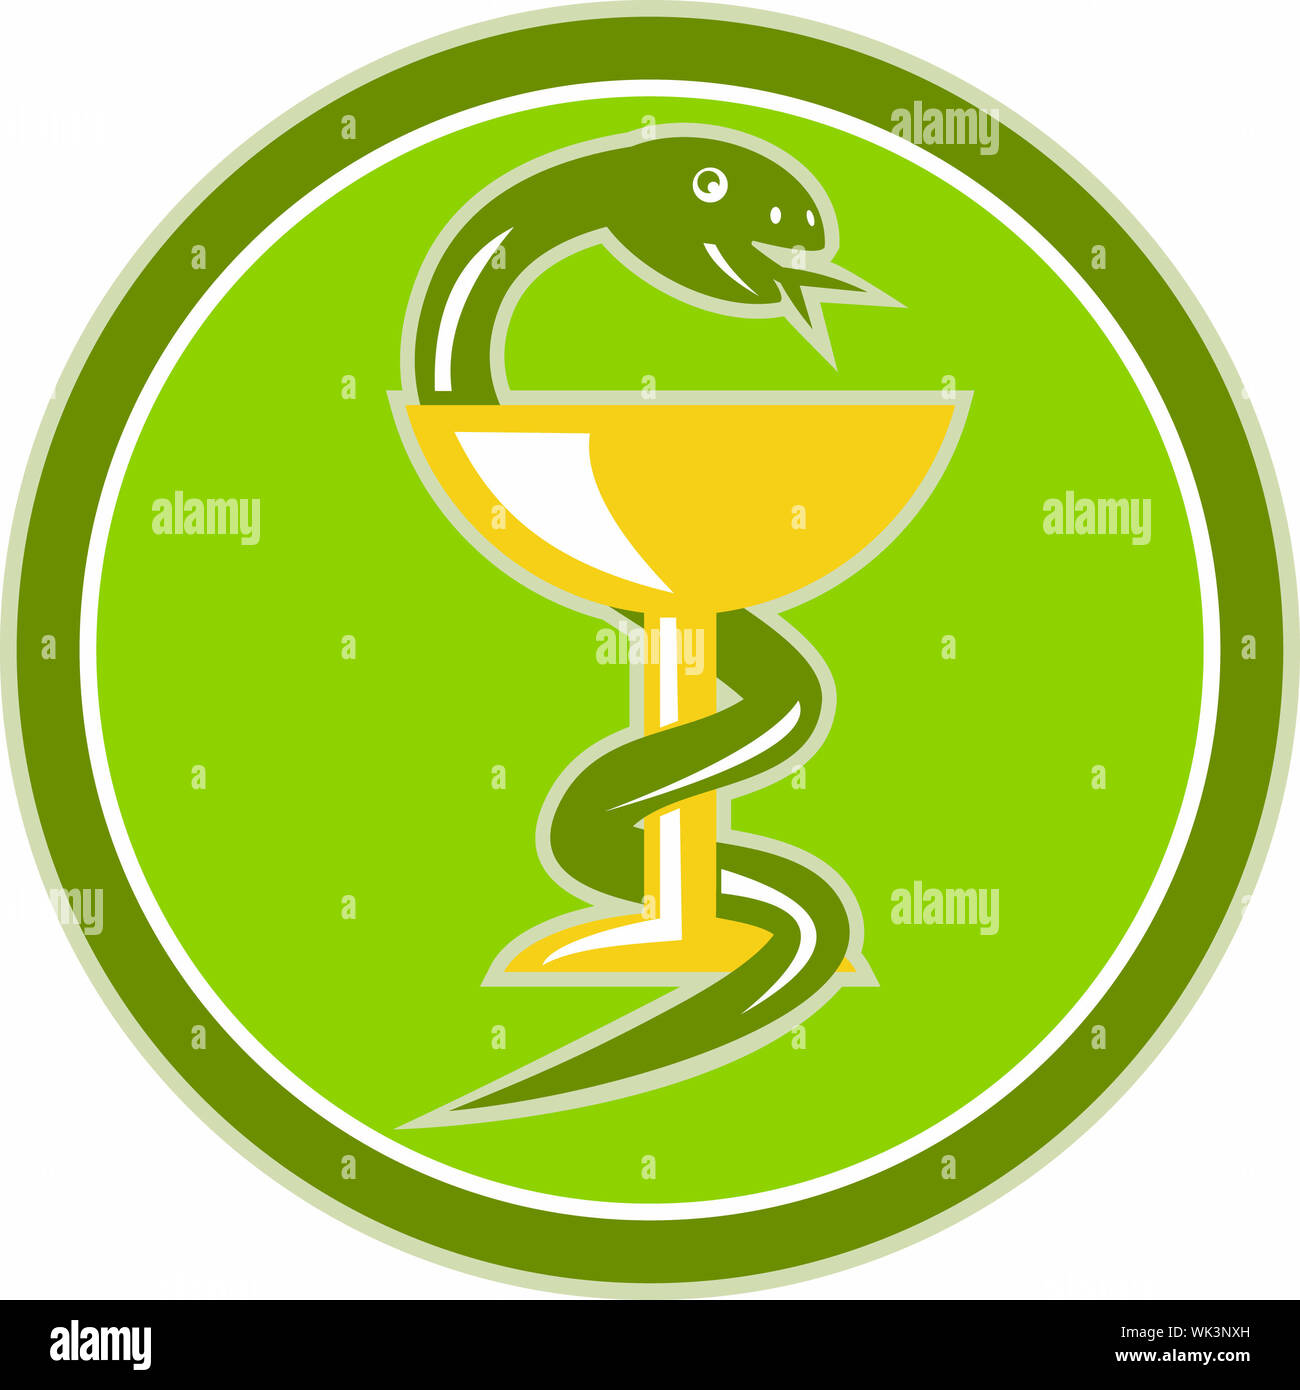 Illustrazione di un serpente di arricciamento o avvolgimento a tazza o bicchiere di vino che rappresenta il simbolo della medicina fatto in stile retrò Foto Stock